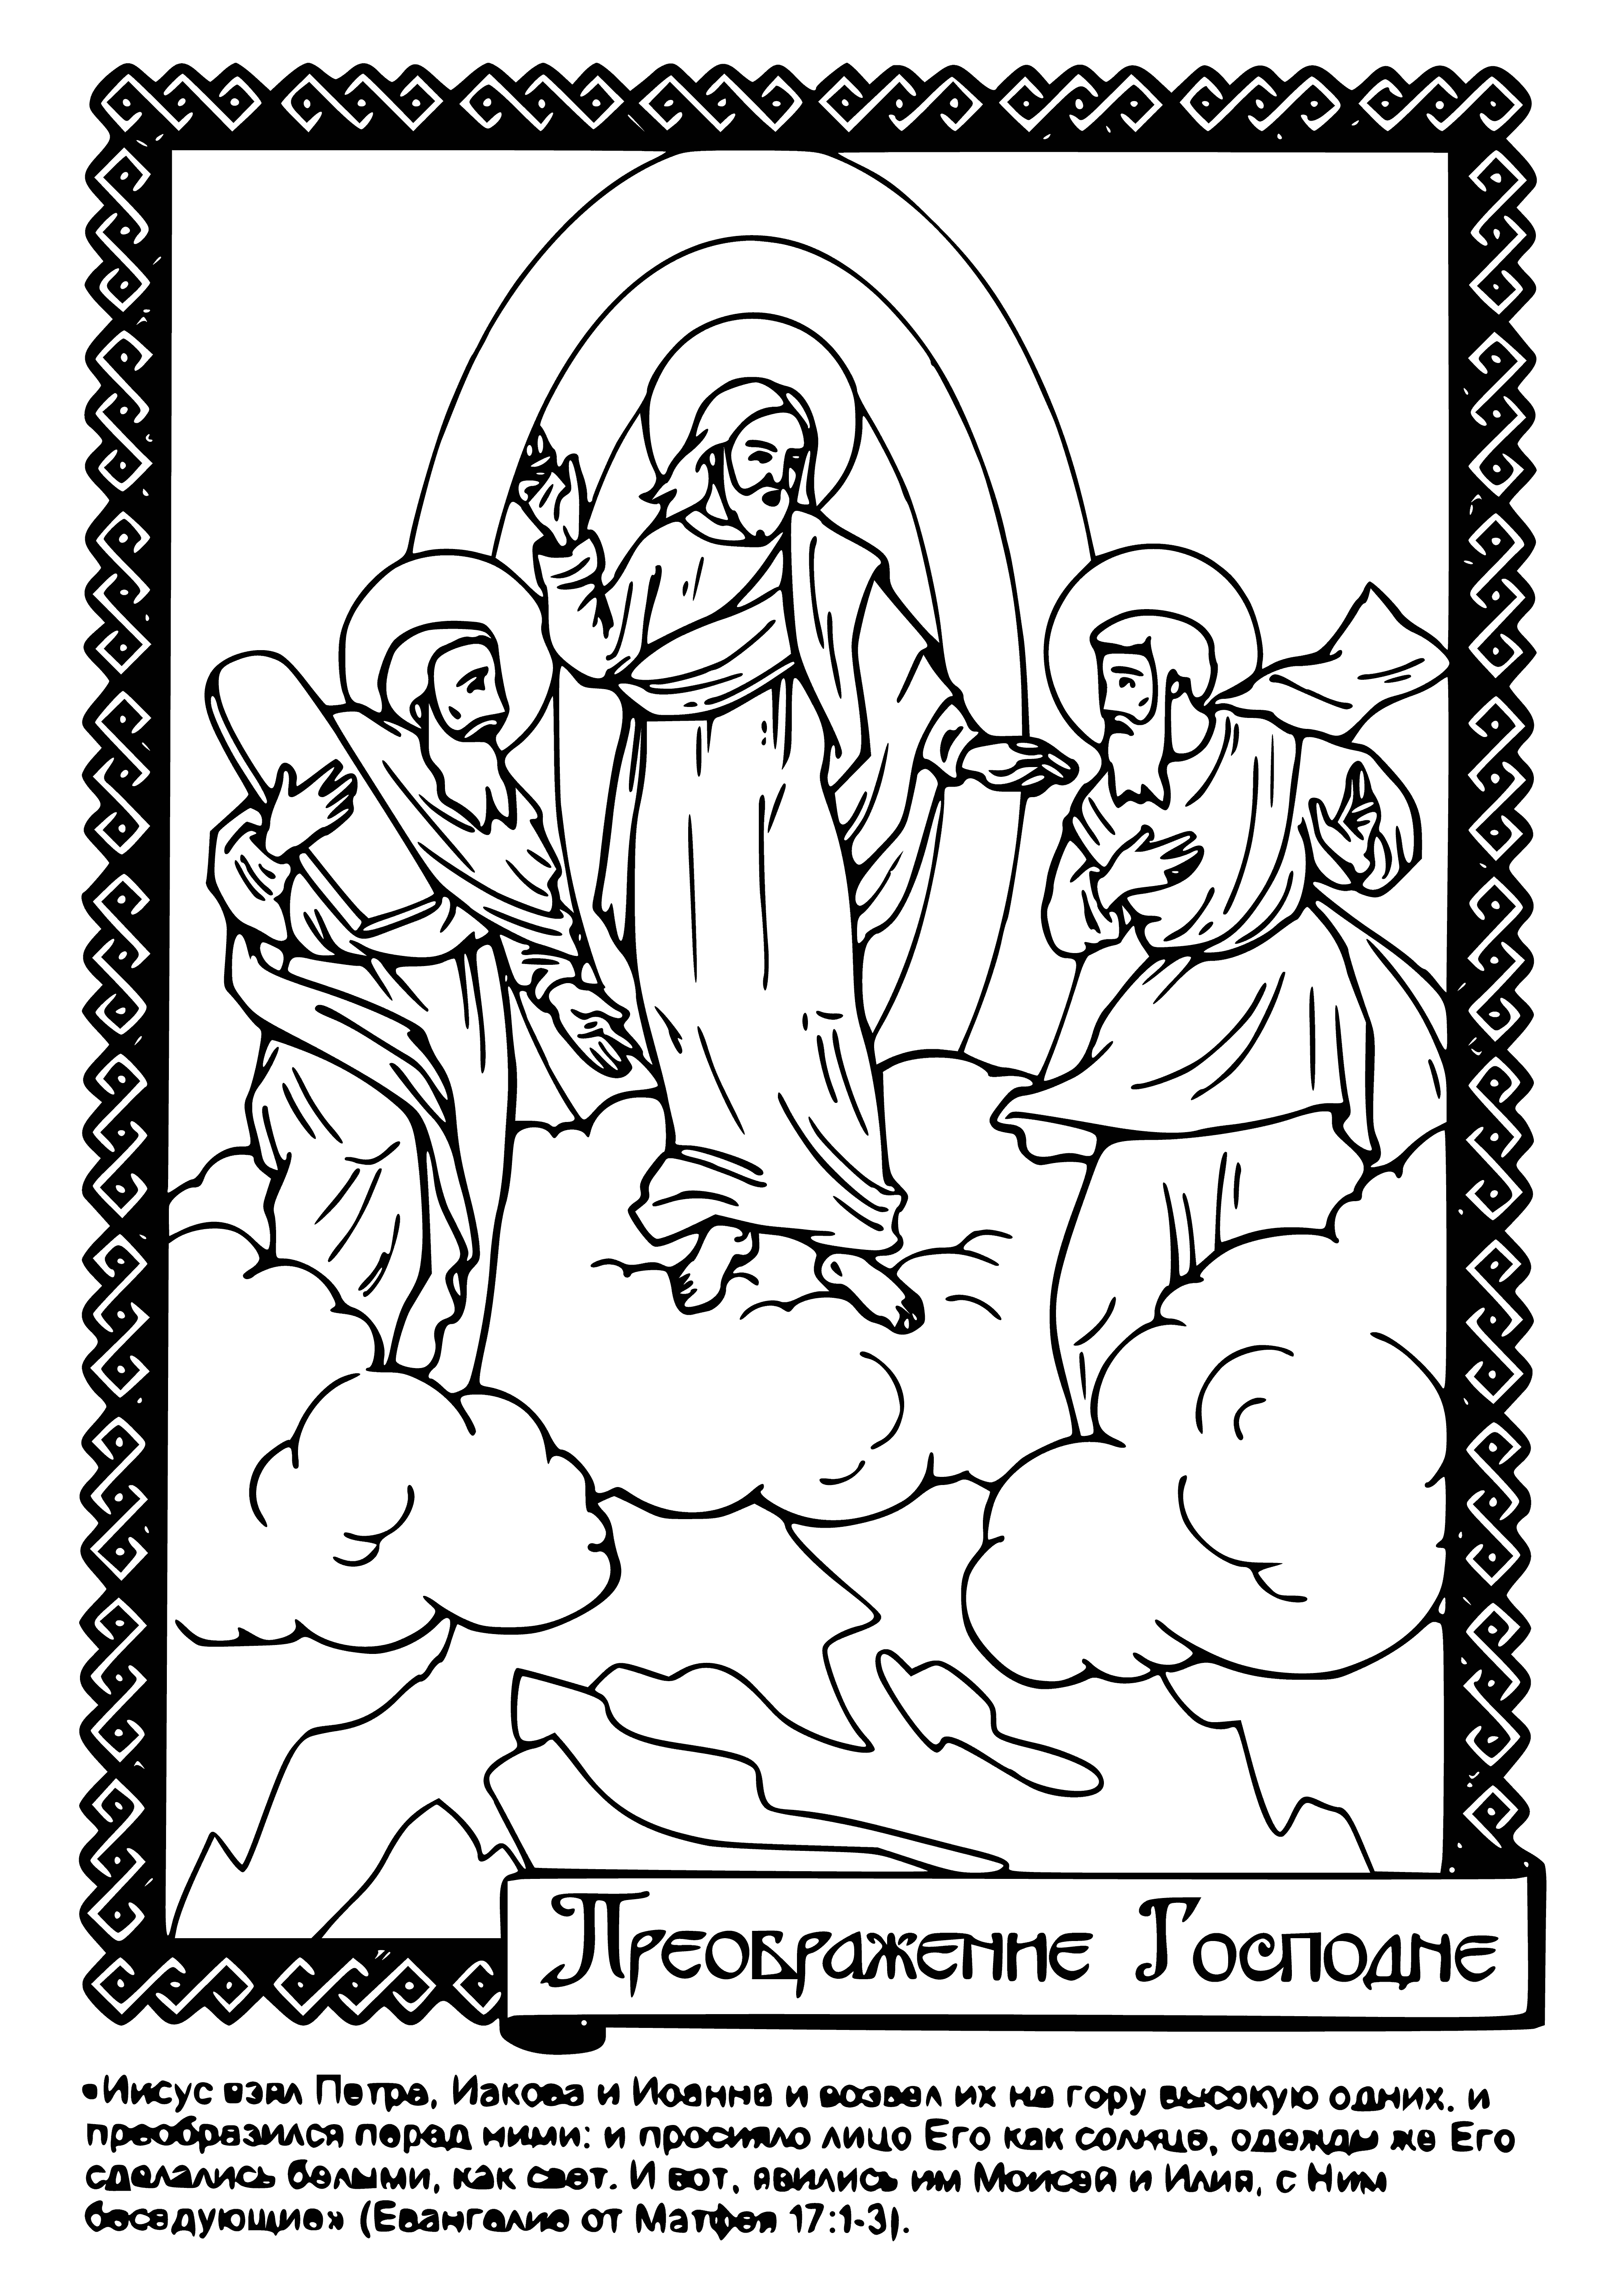 Transfiguratie kleurplaat